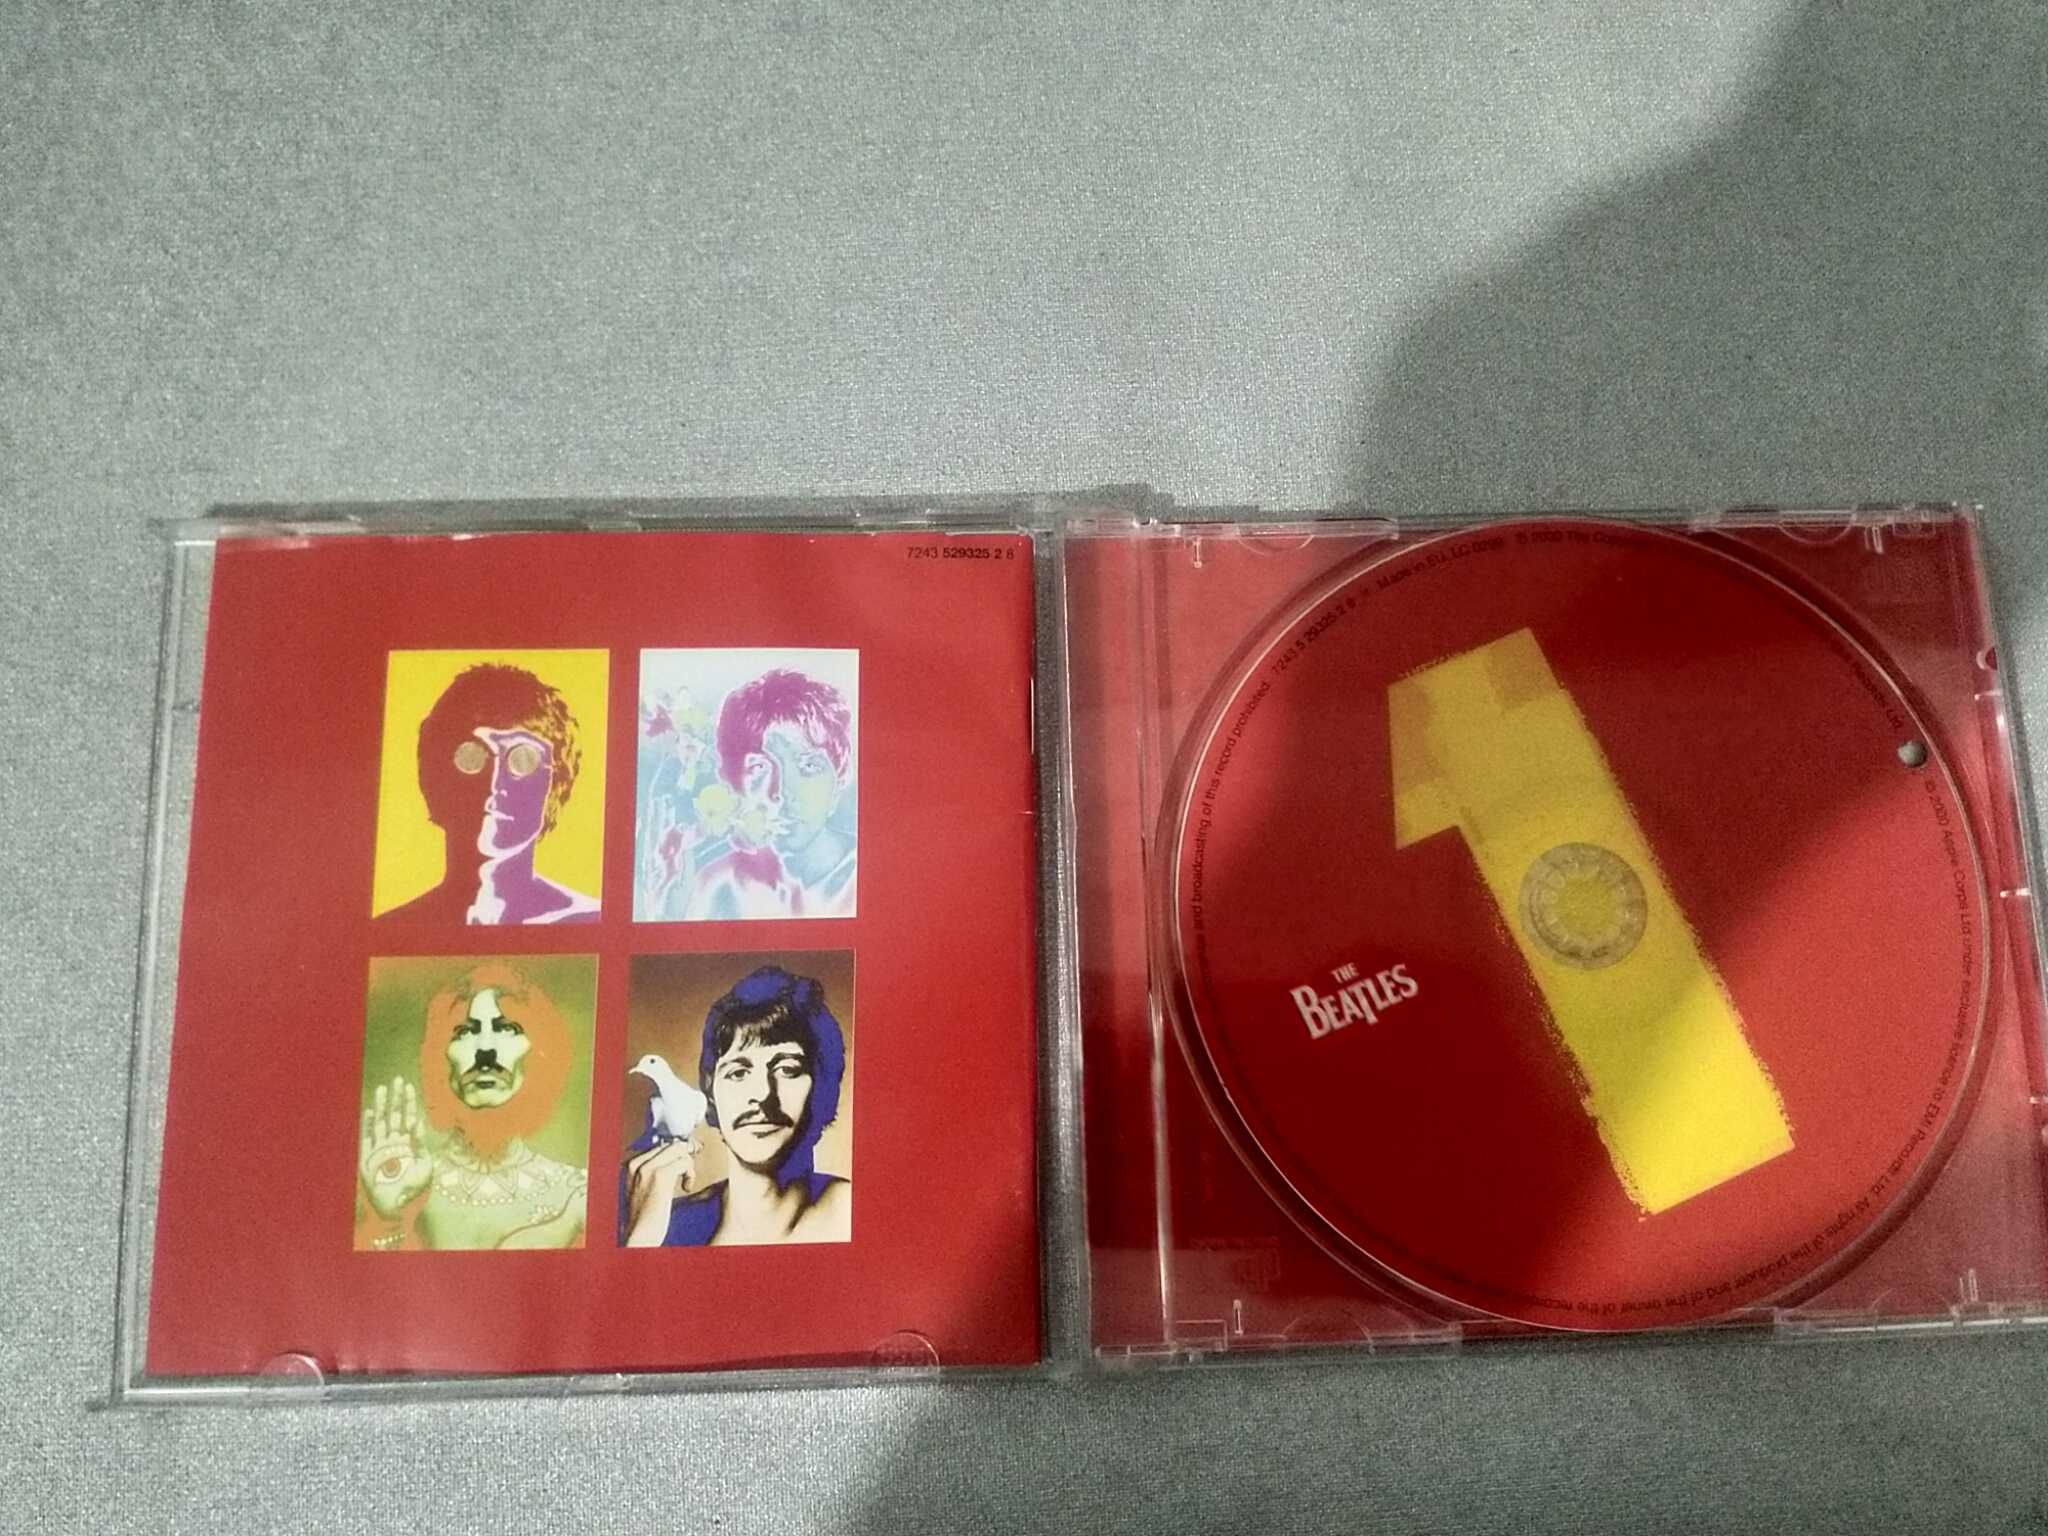 The Beatles 1 - CD com 27 músicas